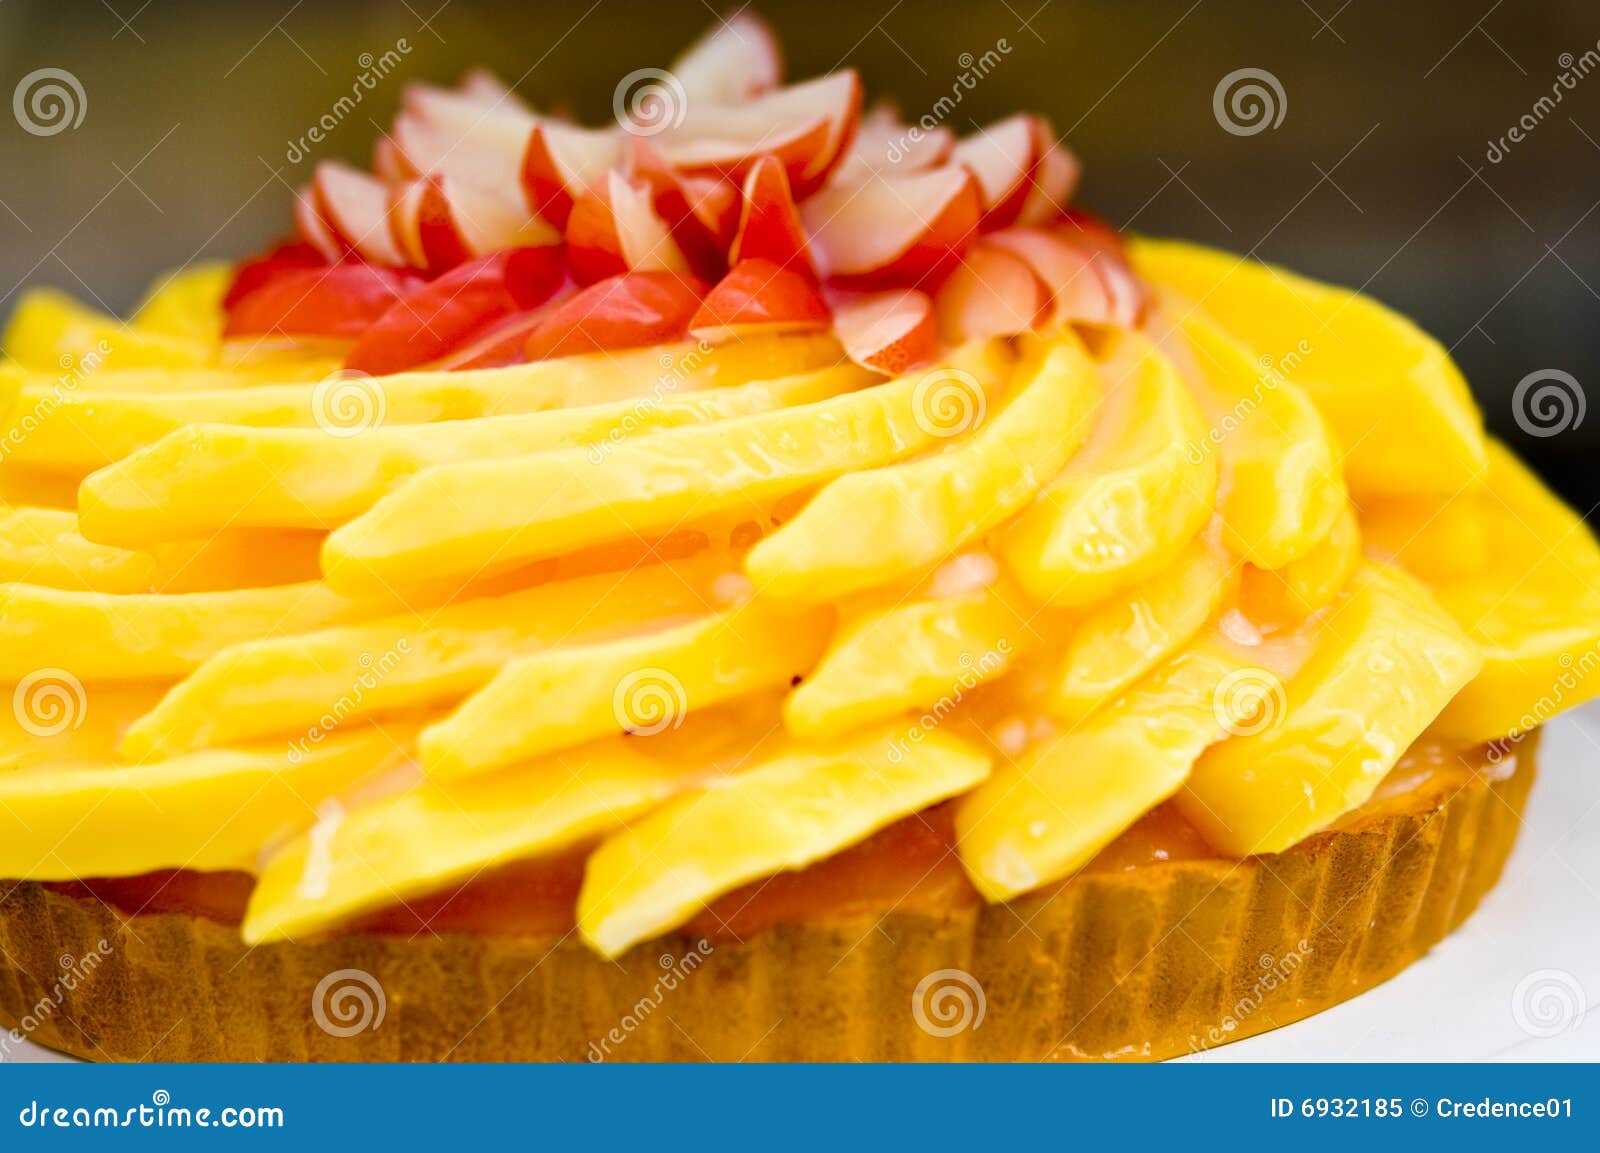 delicious fruitcake